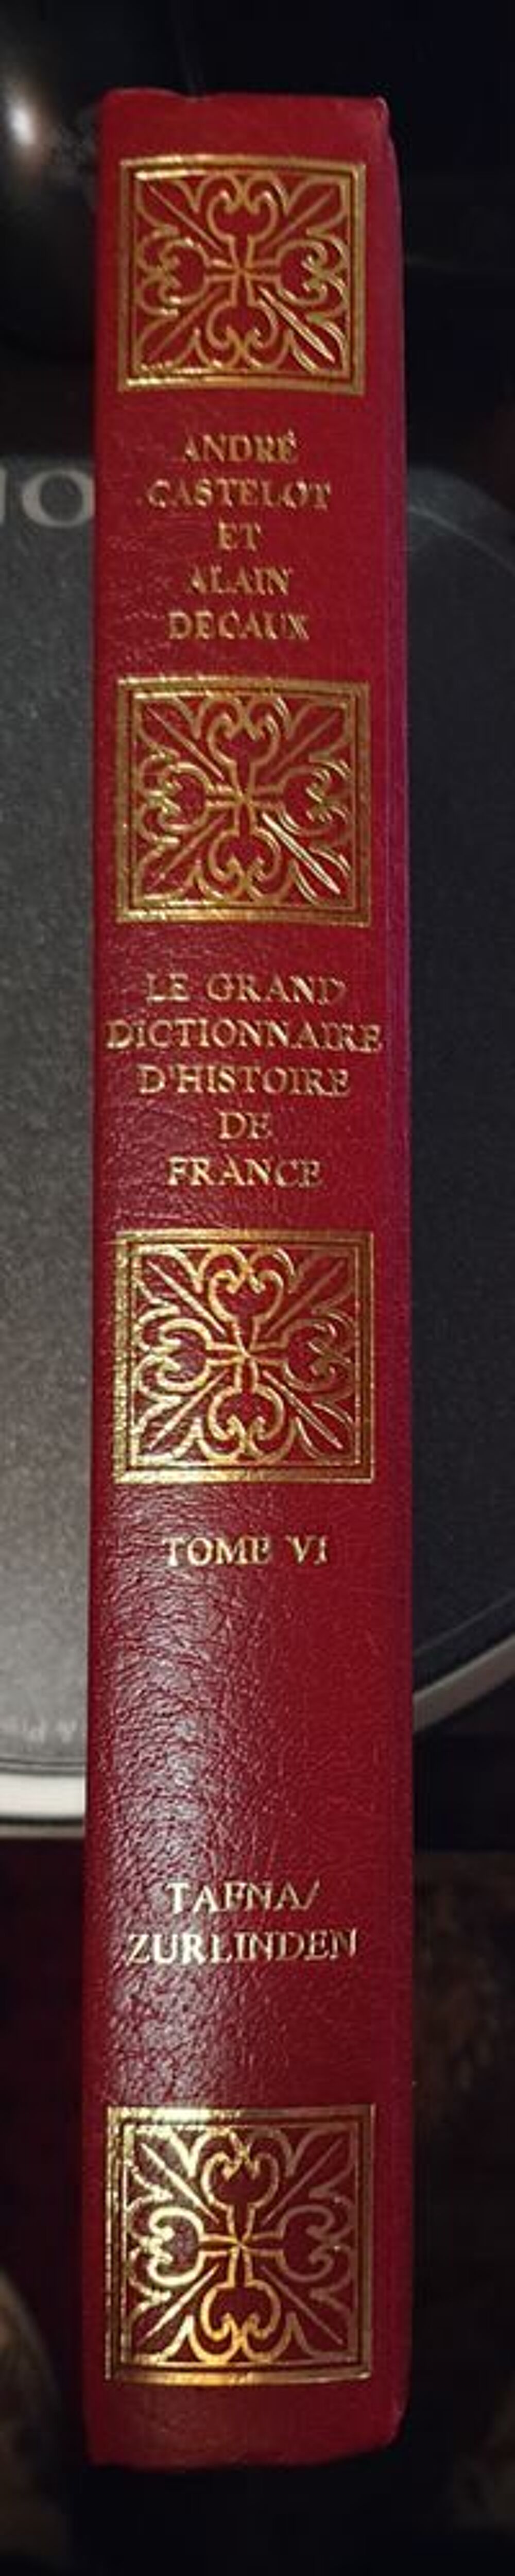 Grand Dictionnaire de l'histoire de France
Livres et BD